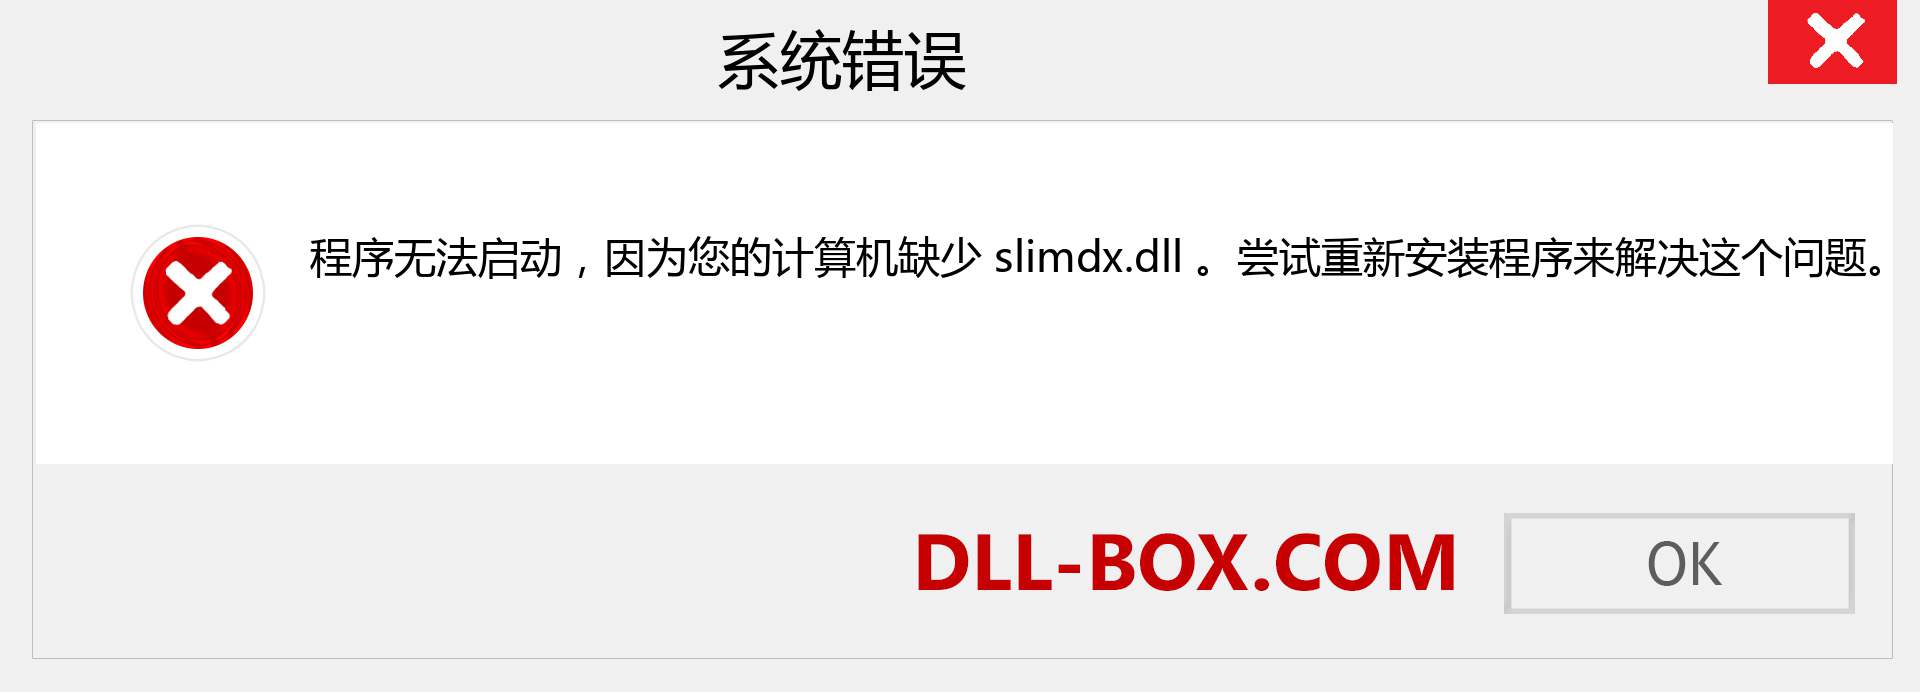 slimdx.dll 文件丢失？。 适用于 Windows 7、8、10 的下载 - 修复 Windows、照片、图像上的 slimdx dll 丢失错误